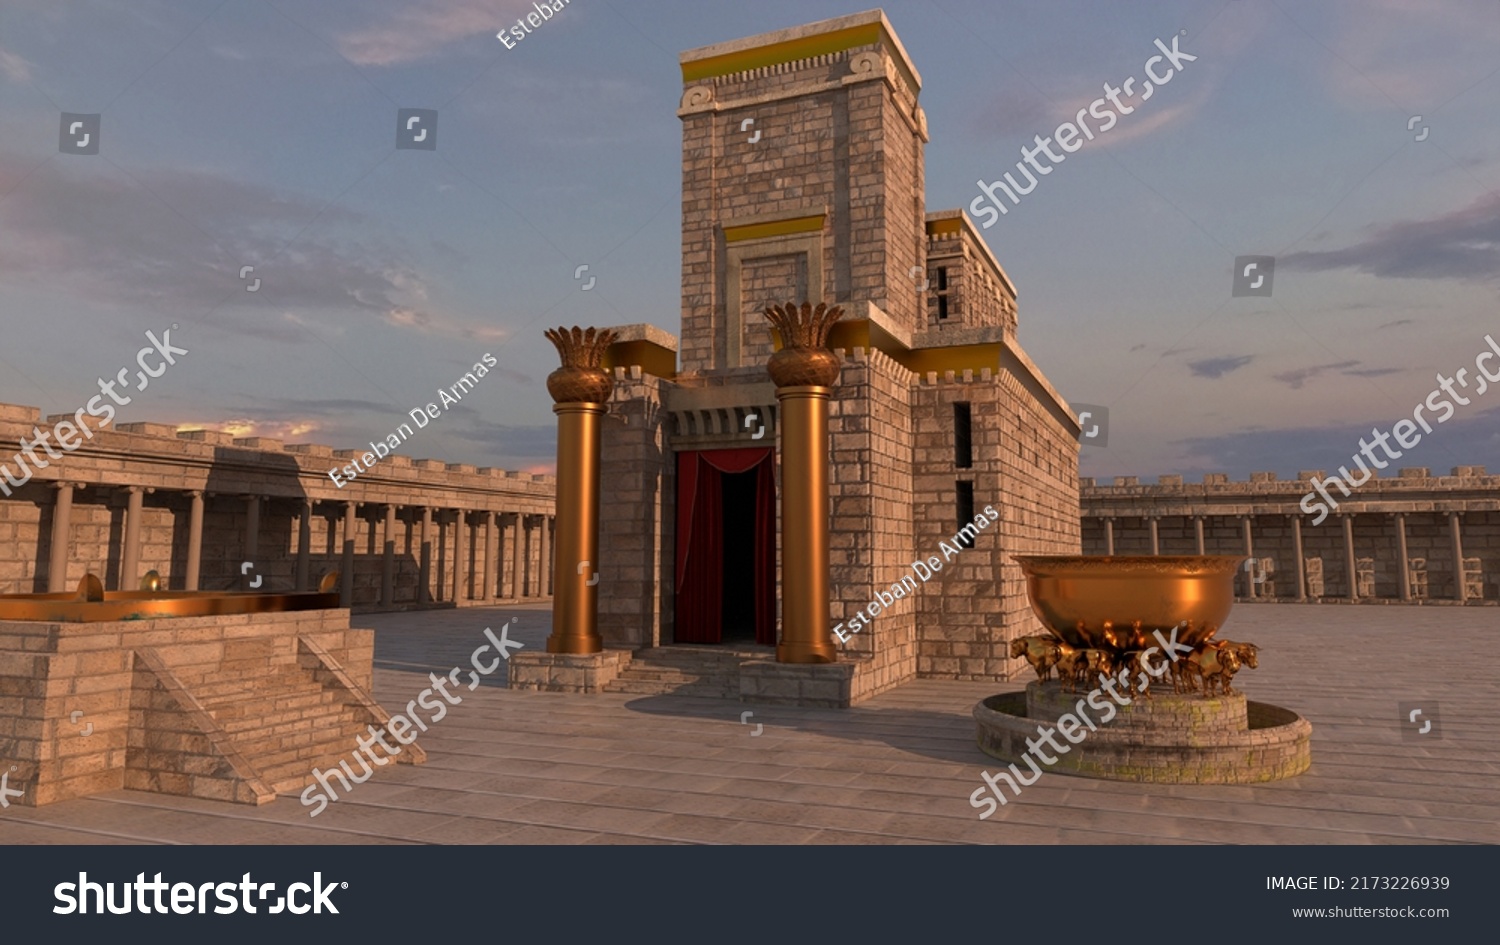 Solomons temple images stock photos d objects vectors